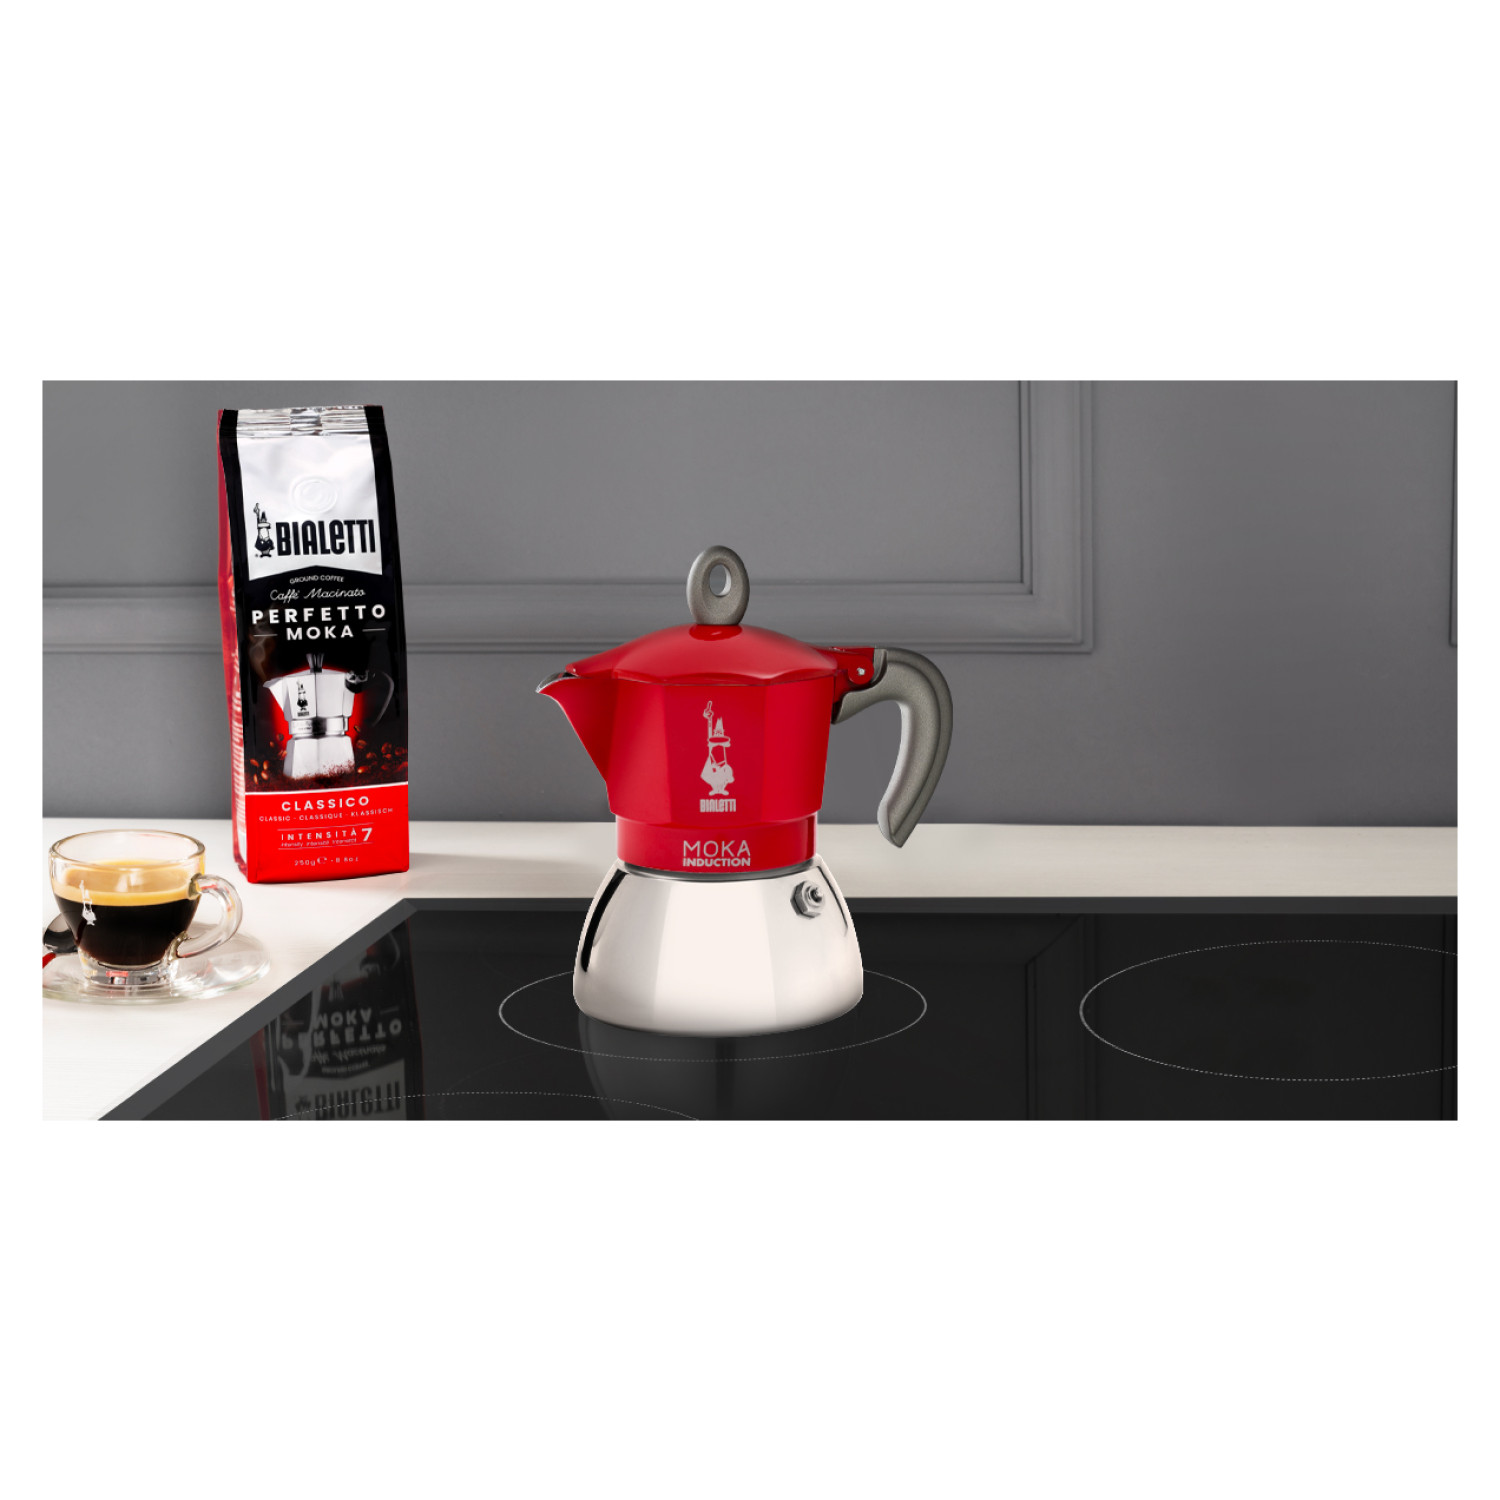 New 2 für RED Rot/Silber Induction Moka Espressokocher Tassen BIALETTI